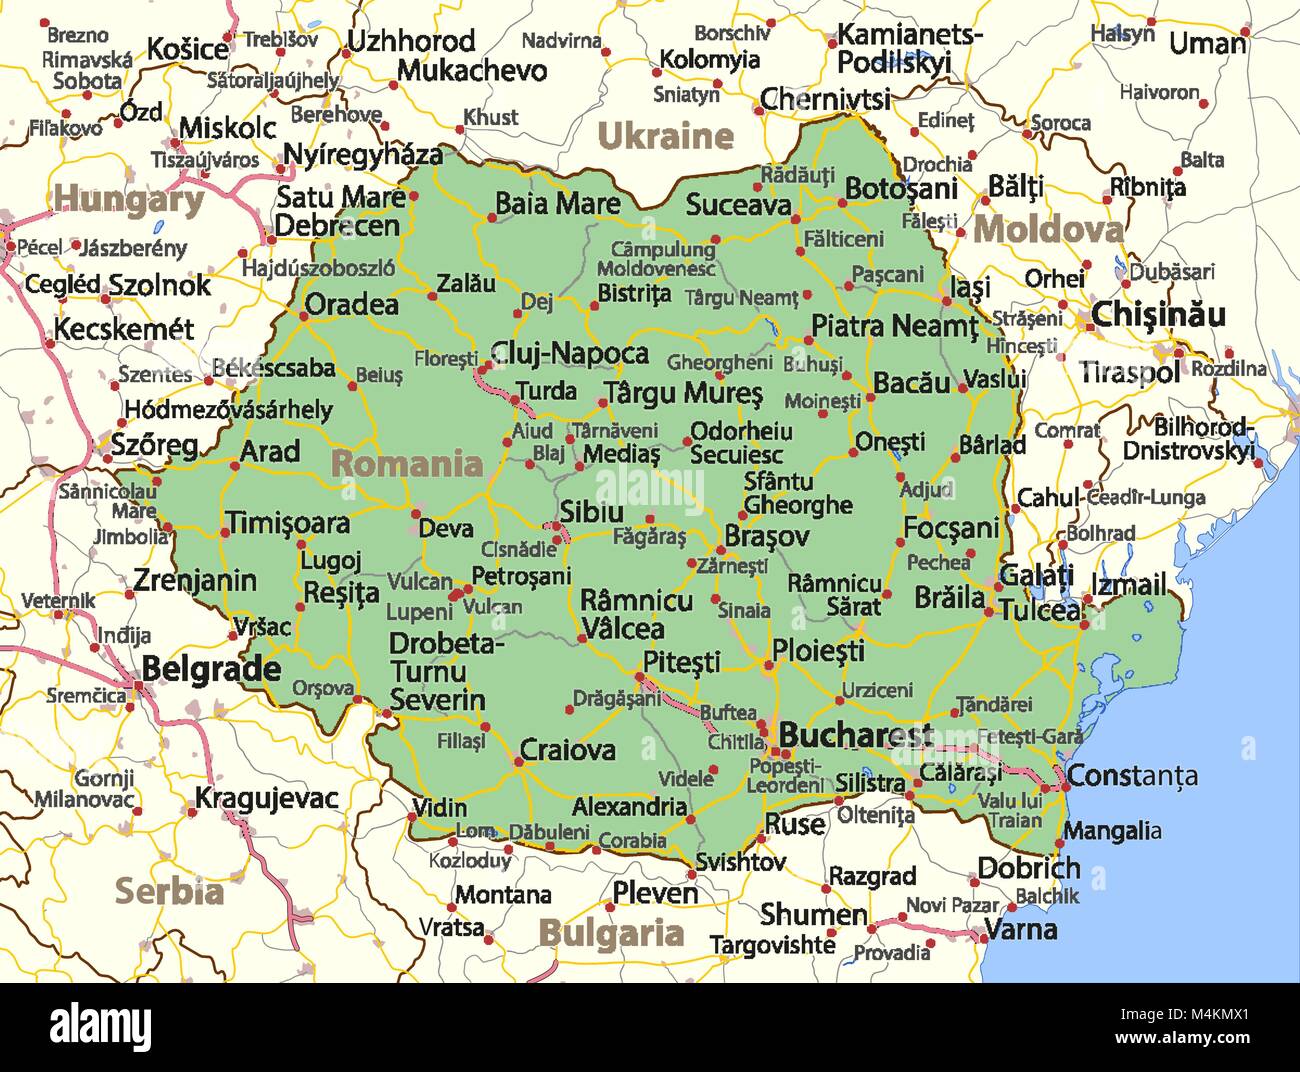 Mappa di Romania. Mostra i confini, zone urbane, nomi di località e strade.  Le etichette in inglese dove possibile. Proiezione: proiezione di Mercatore  Immagine e Vettoriale - Alamy